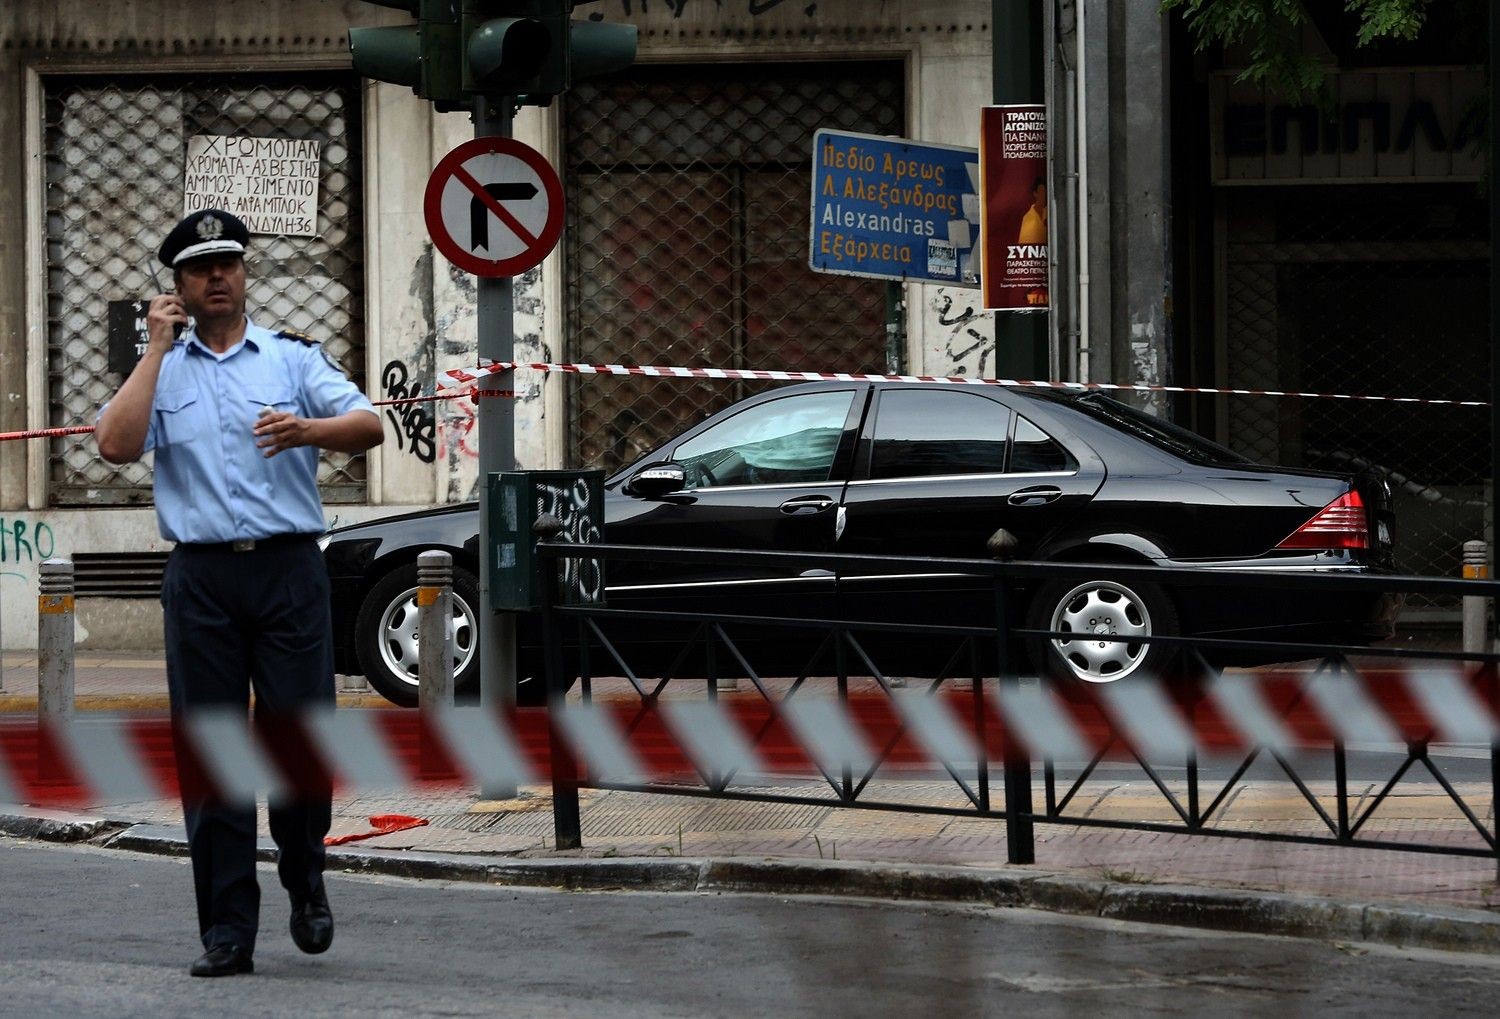 Κύπρος: Συνελήφθη 21 χρονος που χρηματοδοτούσε τον αποστολέα της βόμβας στον Λ.Παπαδήμο